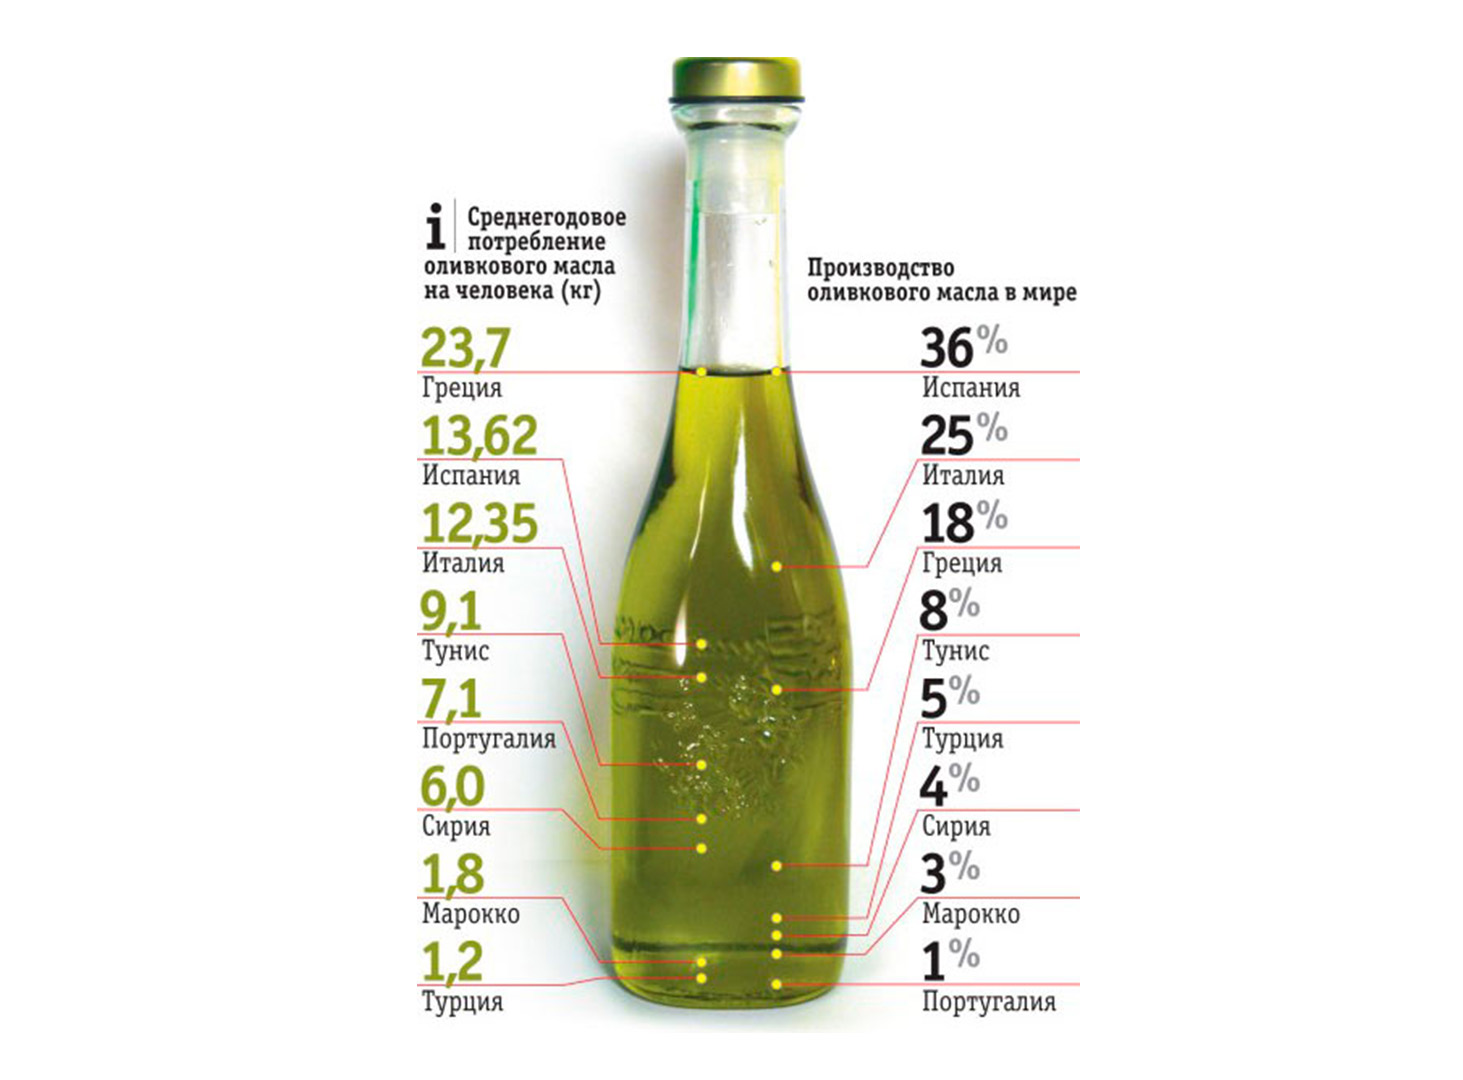 Топ-9 лучших оливковых масел на 2021 год в рейтинге zuzako